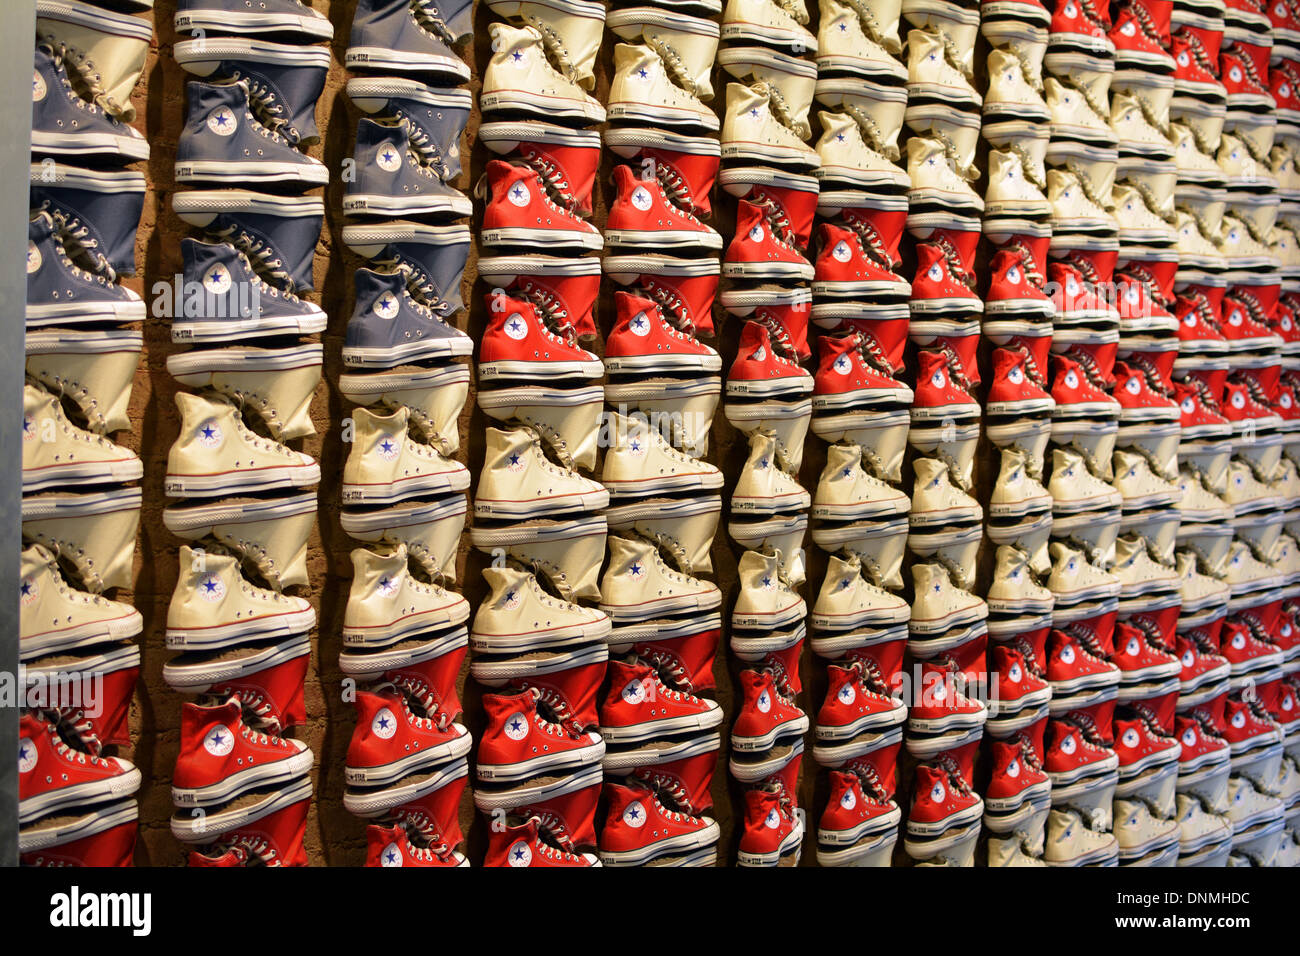 Converse sneakers immagini e fotografie stock ad alta risoluzione - Alamy